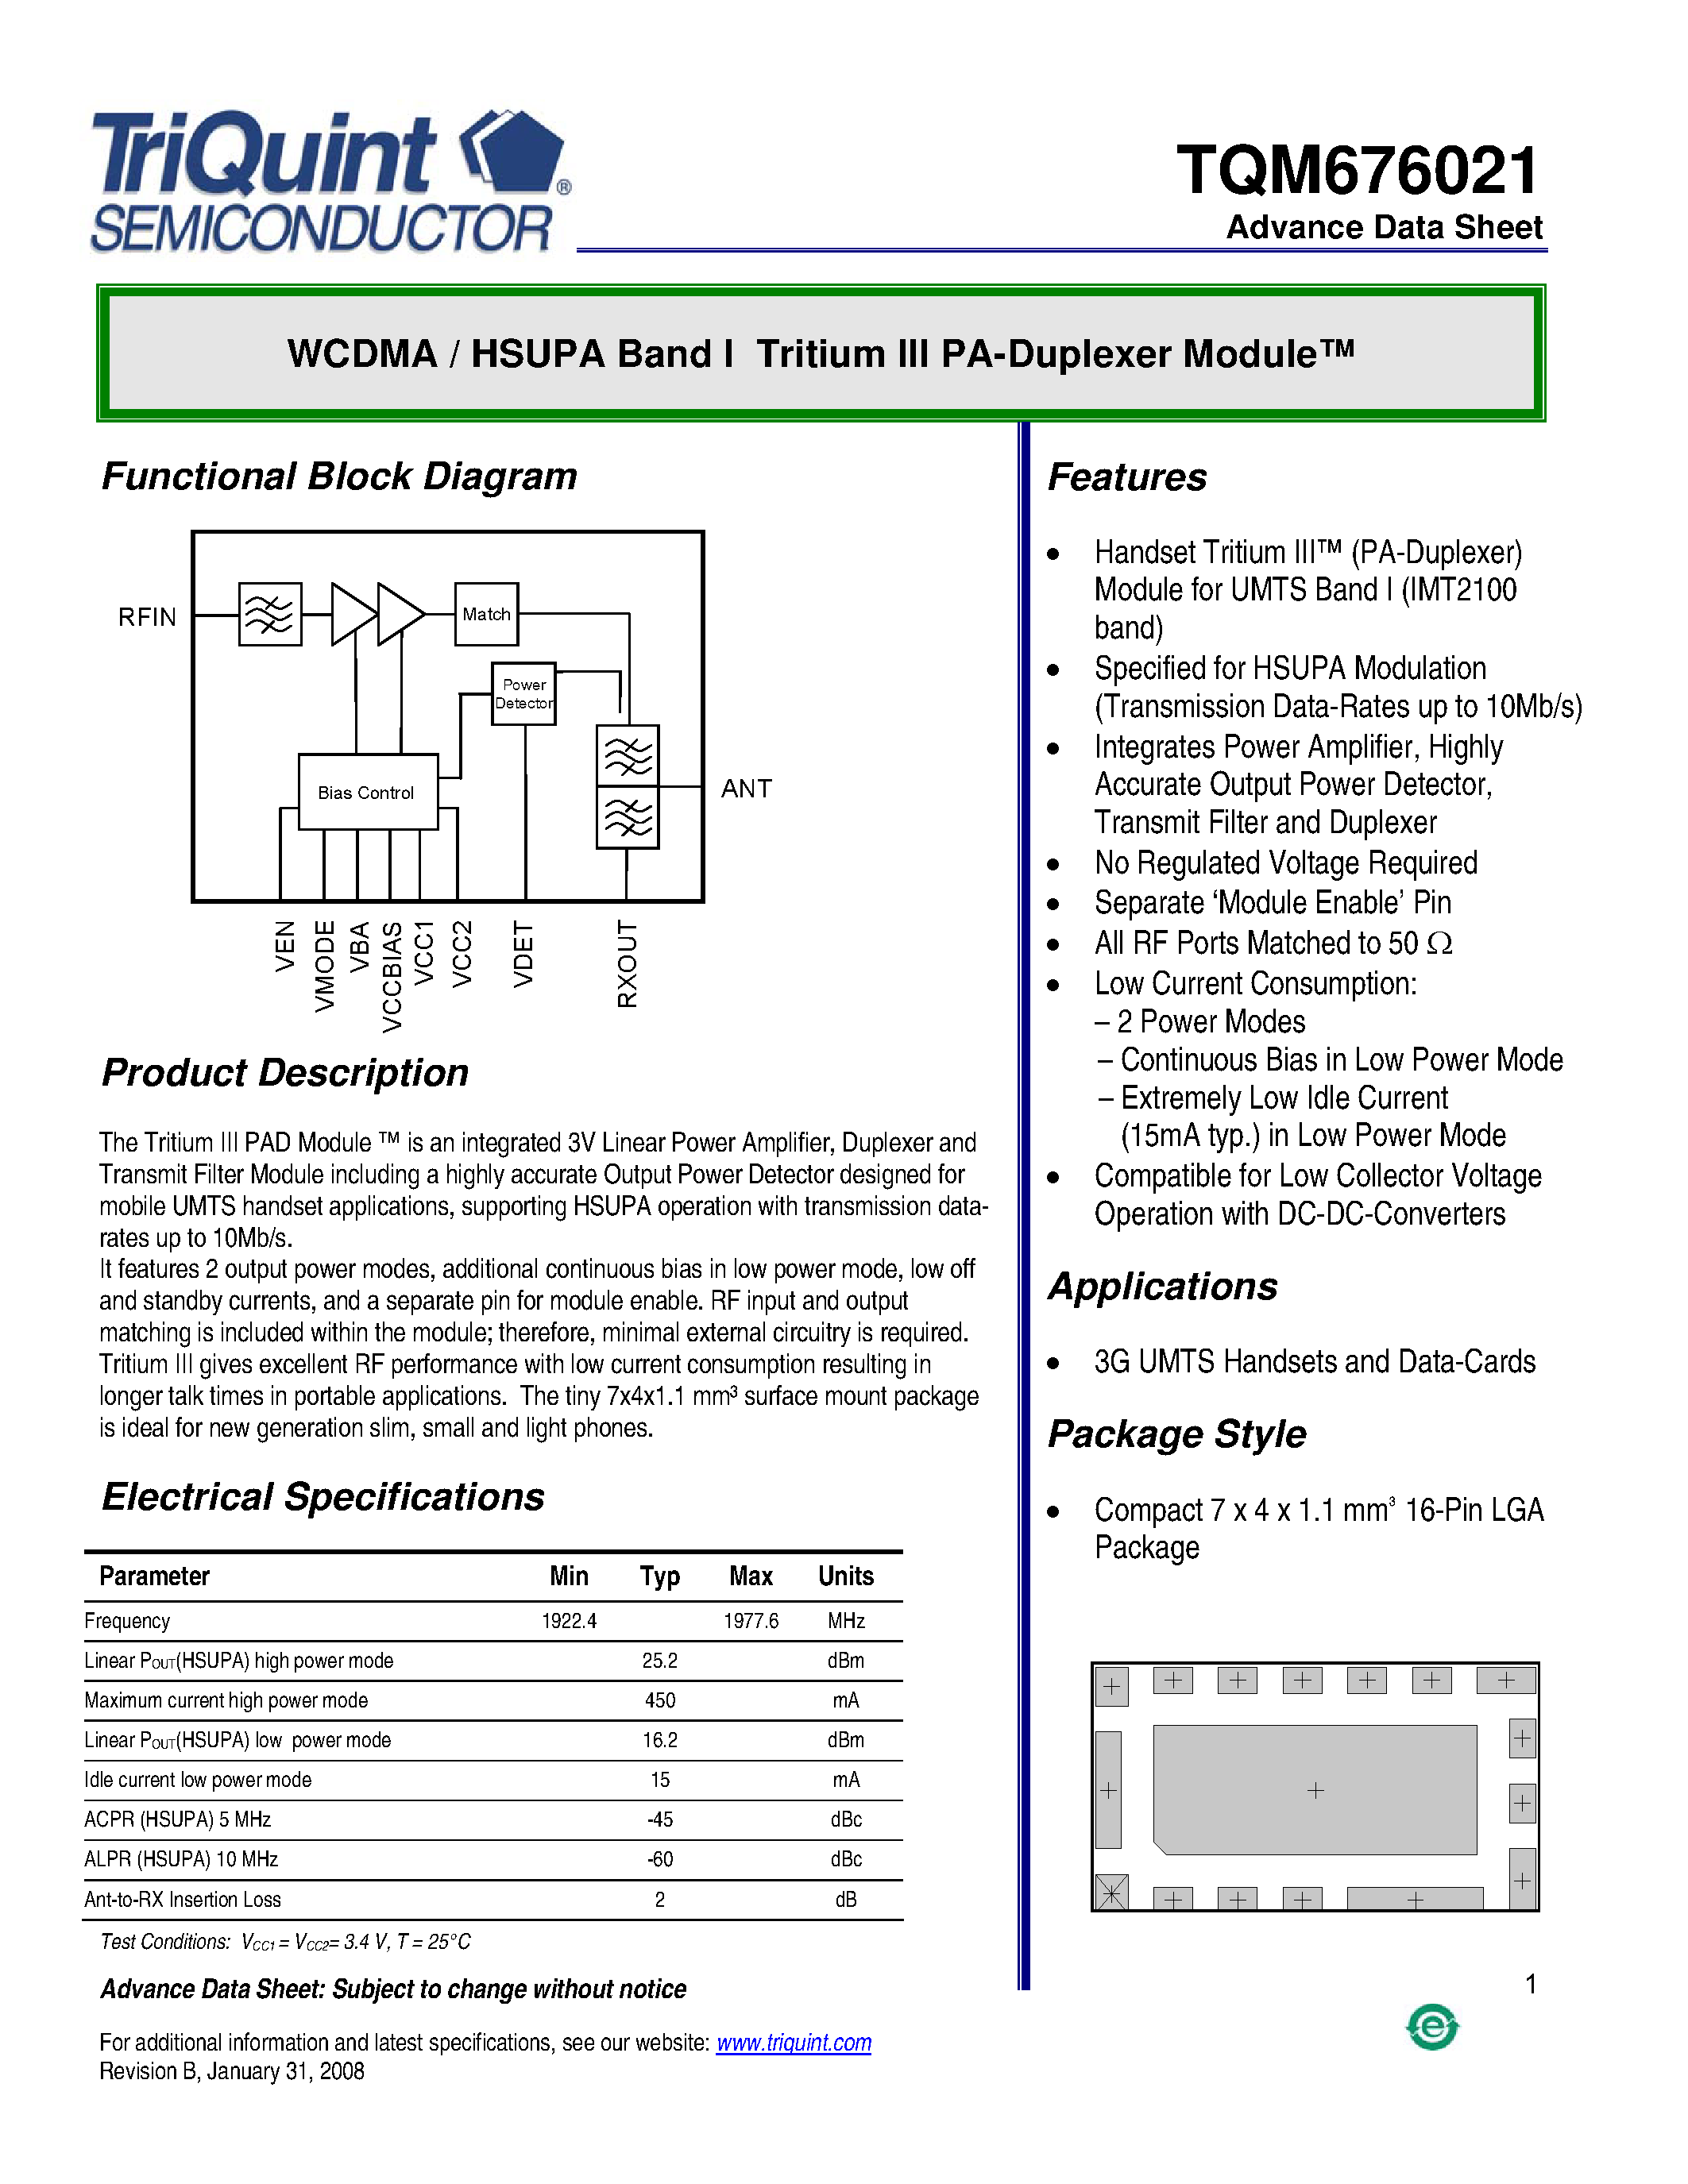 Даташит TQM676021 - WCDMA/HSUPA Band I Tritium III PA-Duplexer Module страница 1